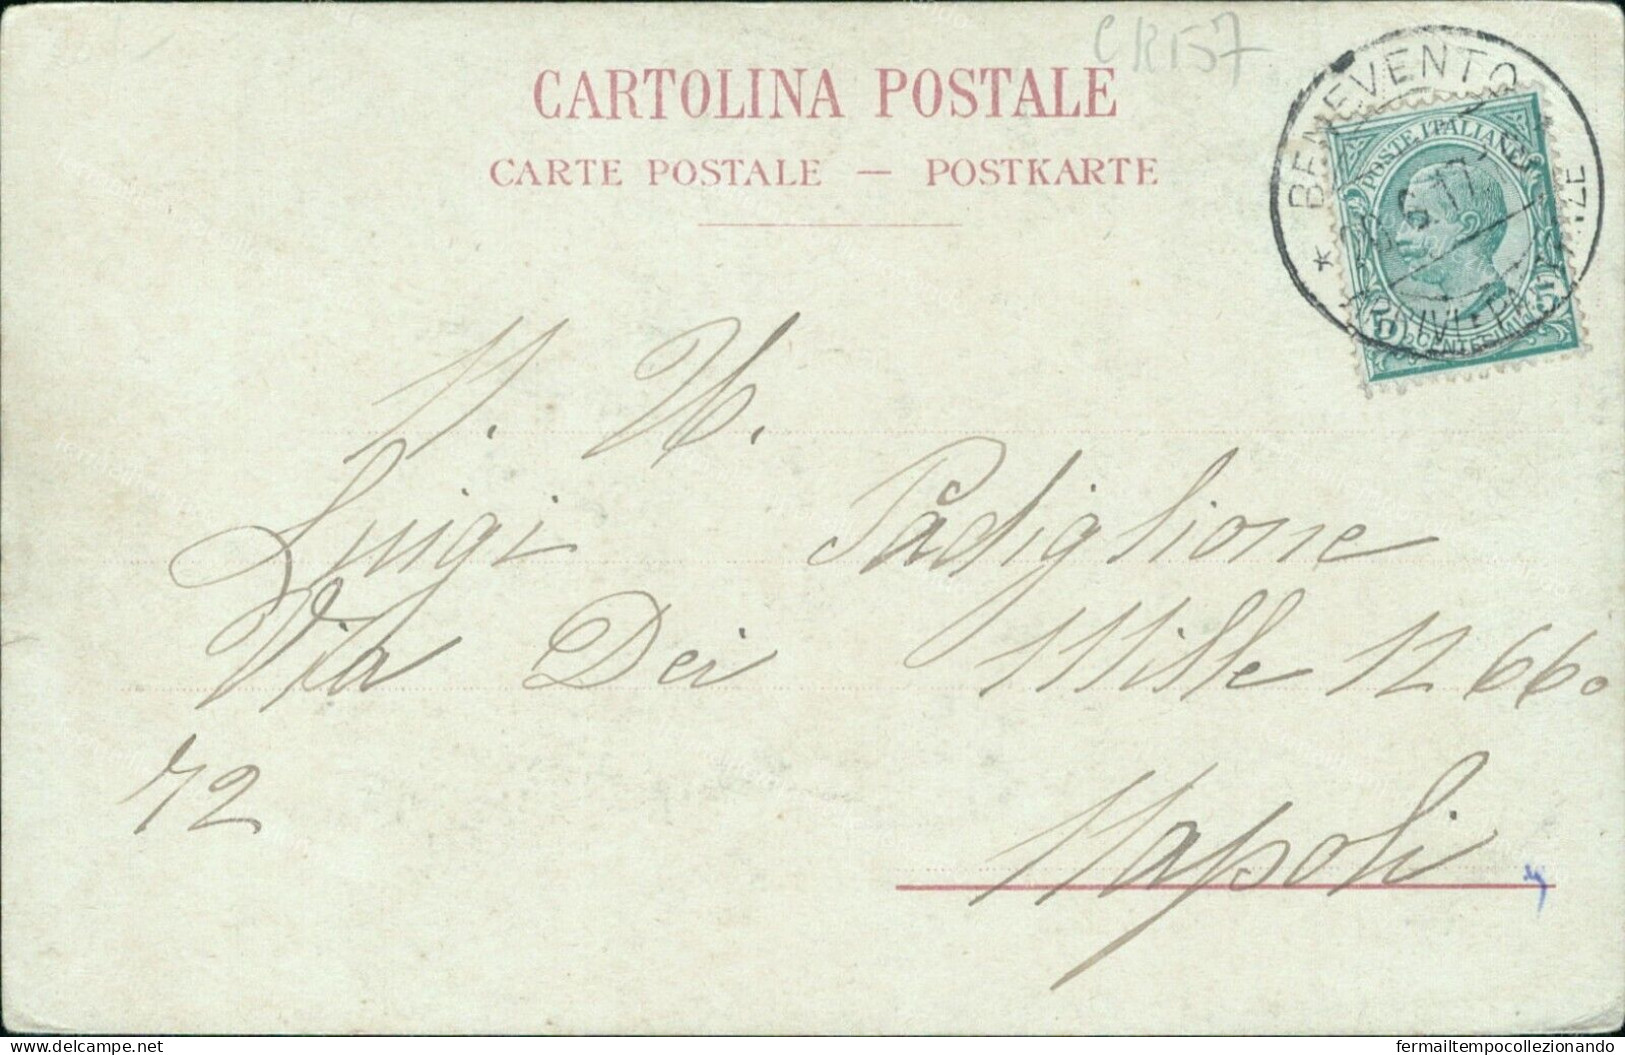 Cr157 Cartolina Benevento Citta' Castello Re Manfredi 1917 Campania - Benevento